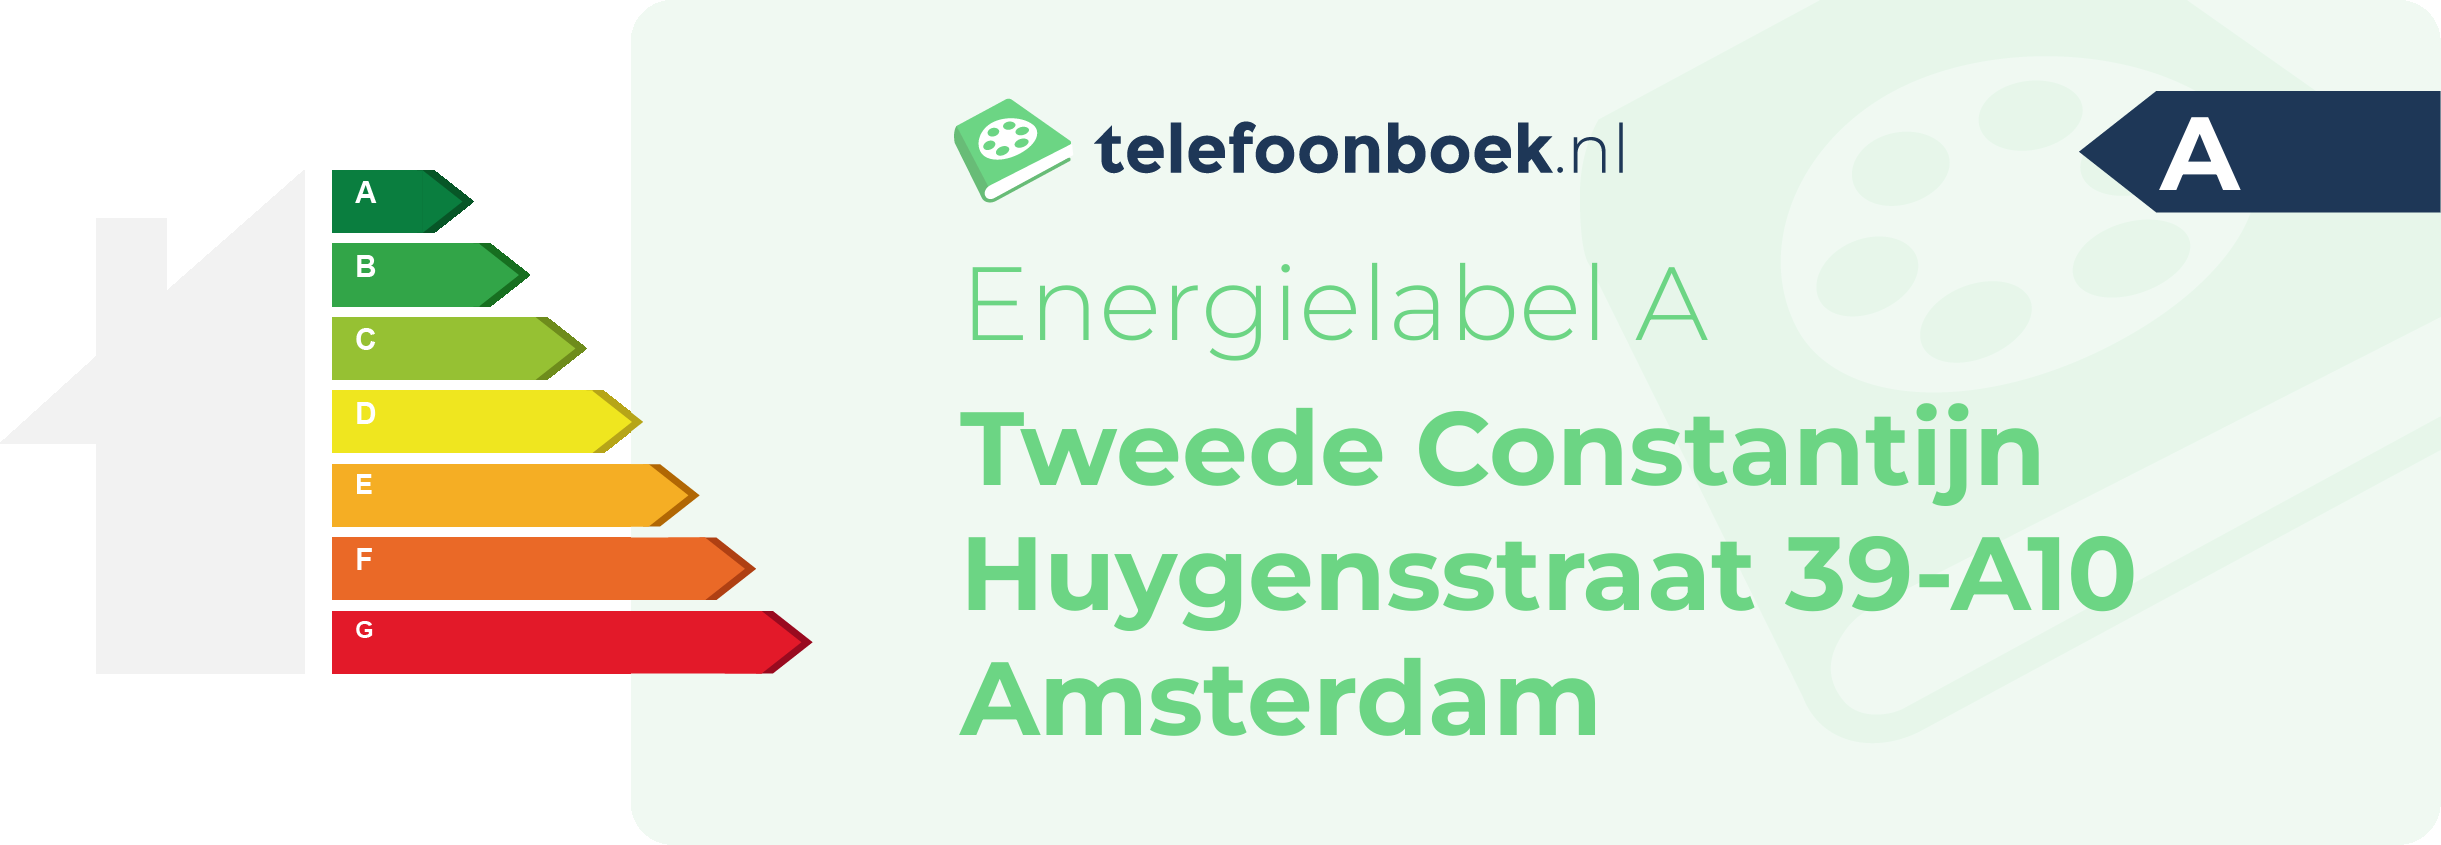 Energielabel Tweede Constantijn Huygensstraat 39-A10 Amsterdam